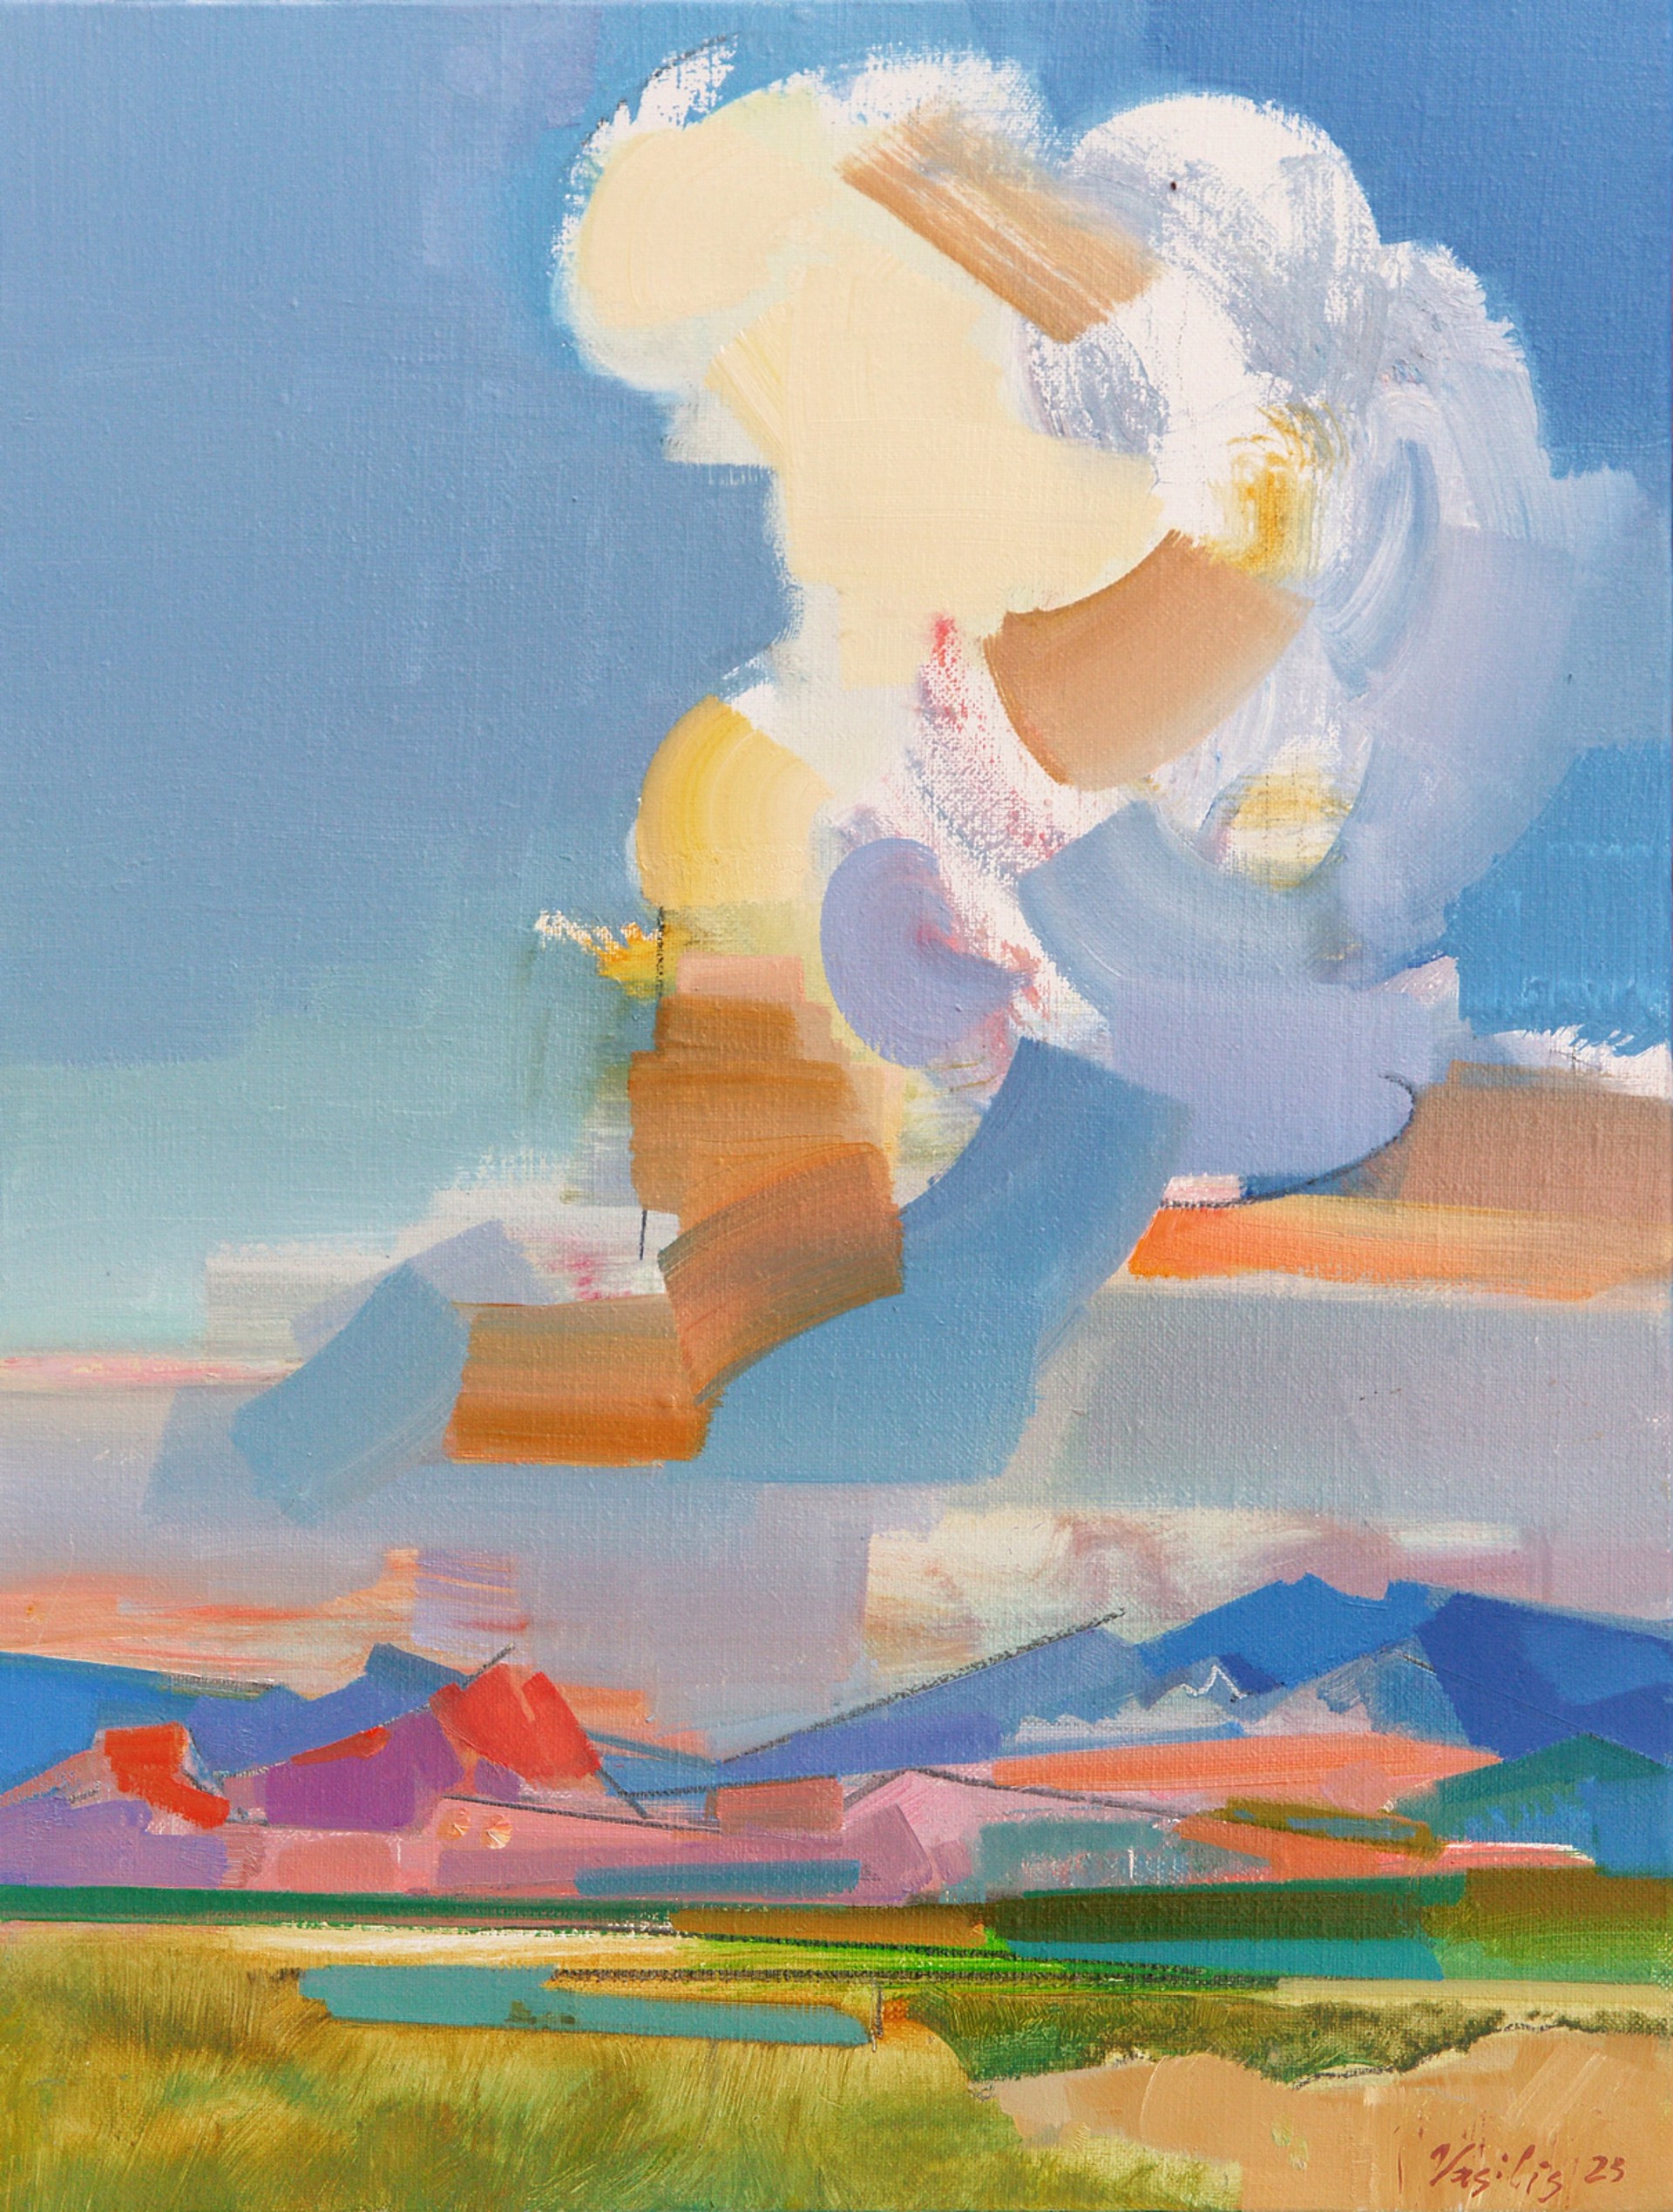 Spirit of Colorado n.2 by Vasily Ryabchenko